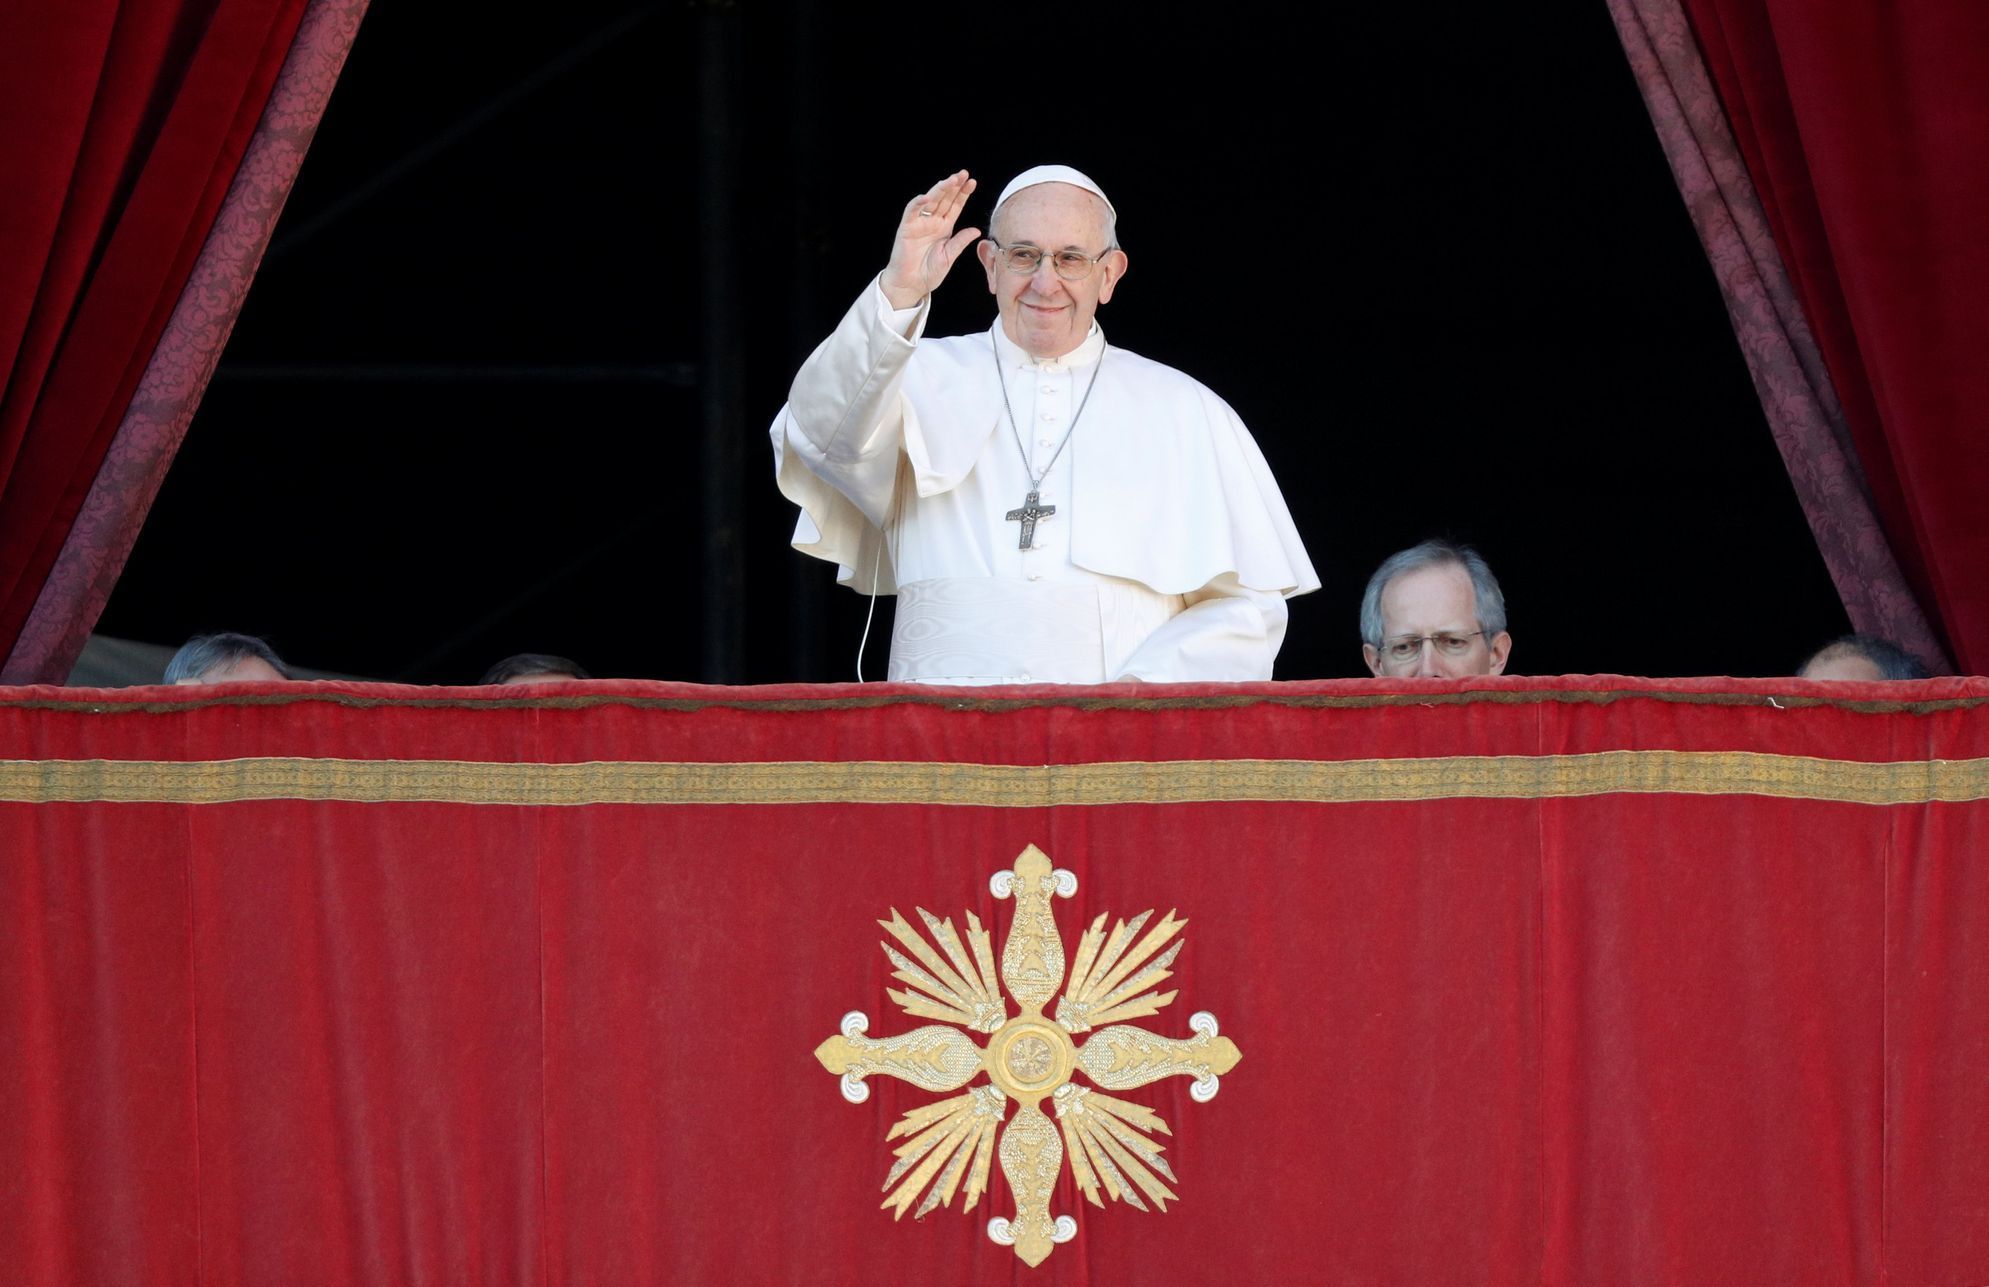 Papež František - poselství Městu a světu (Urbi et orbi)